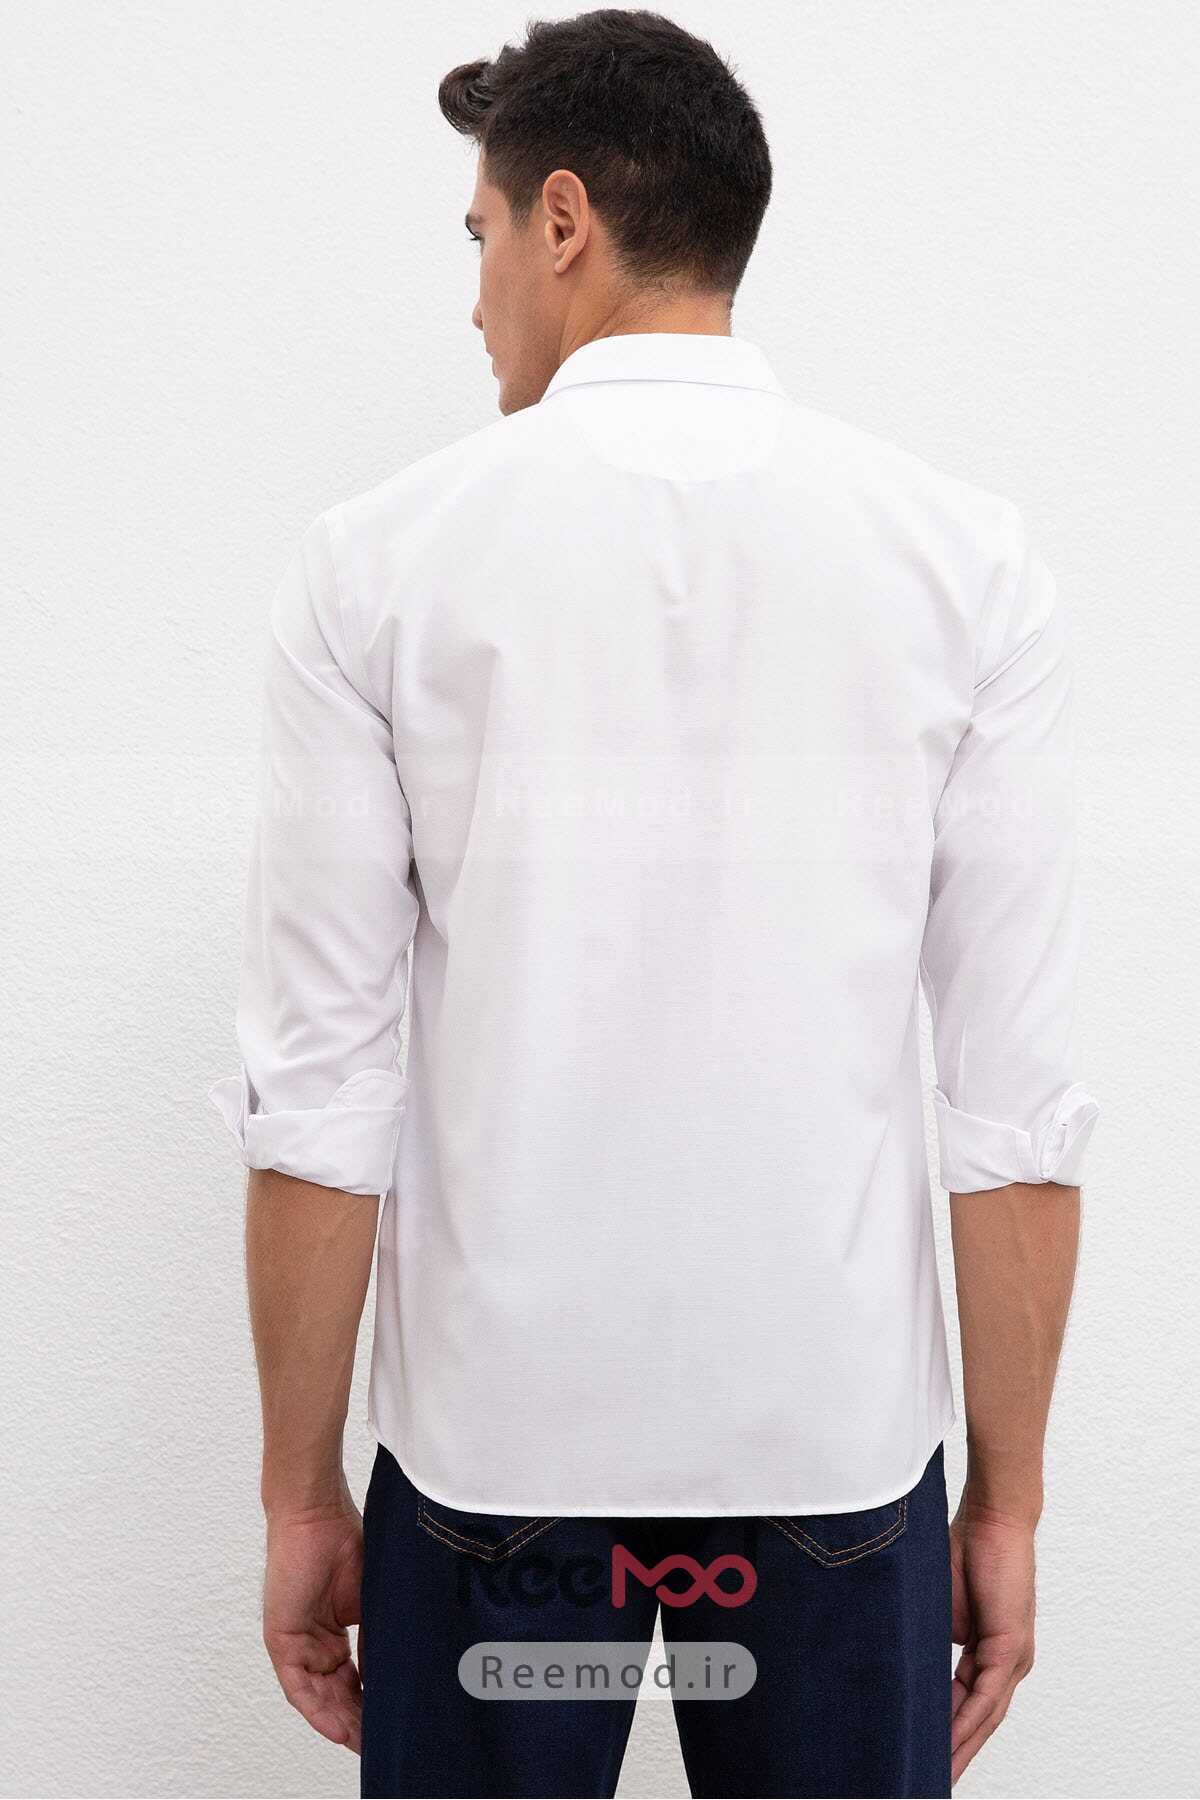 پیراهن مردانه یقه باریک سفید برند U.S. Polo